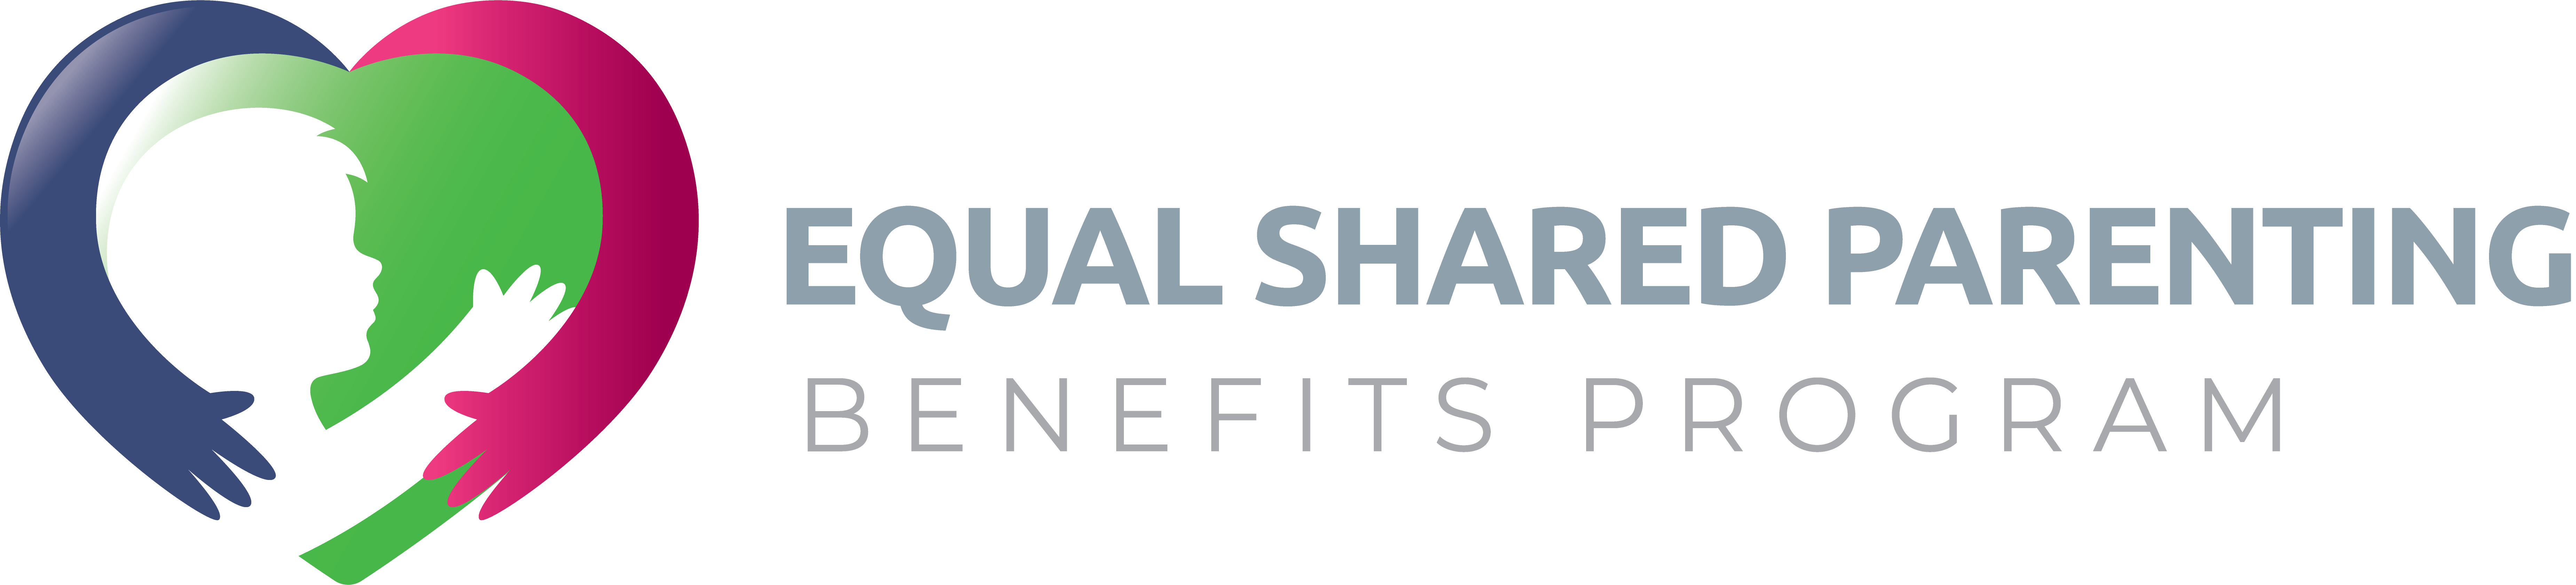 Equal Shared Parenting Benefits Program